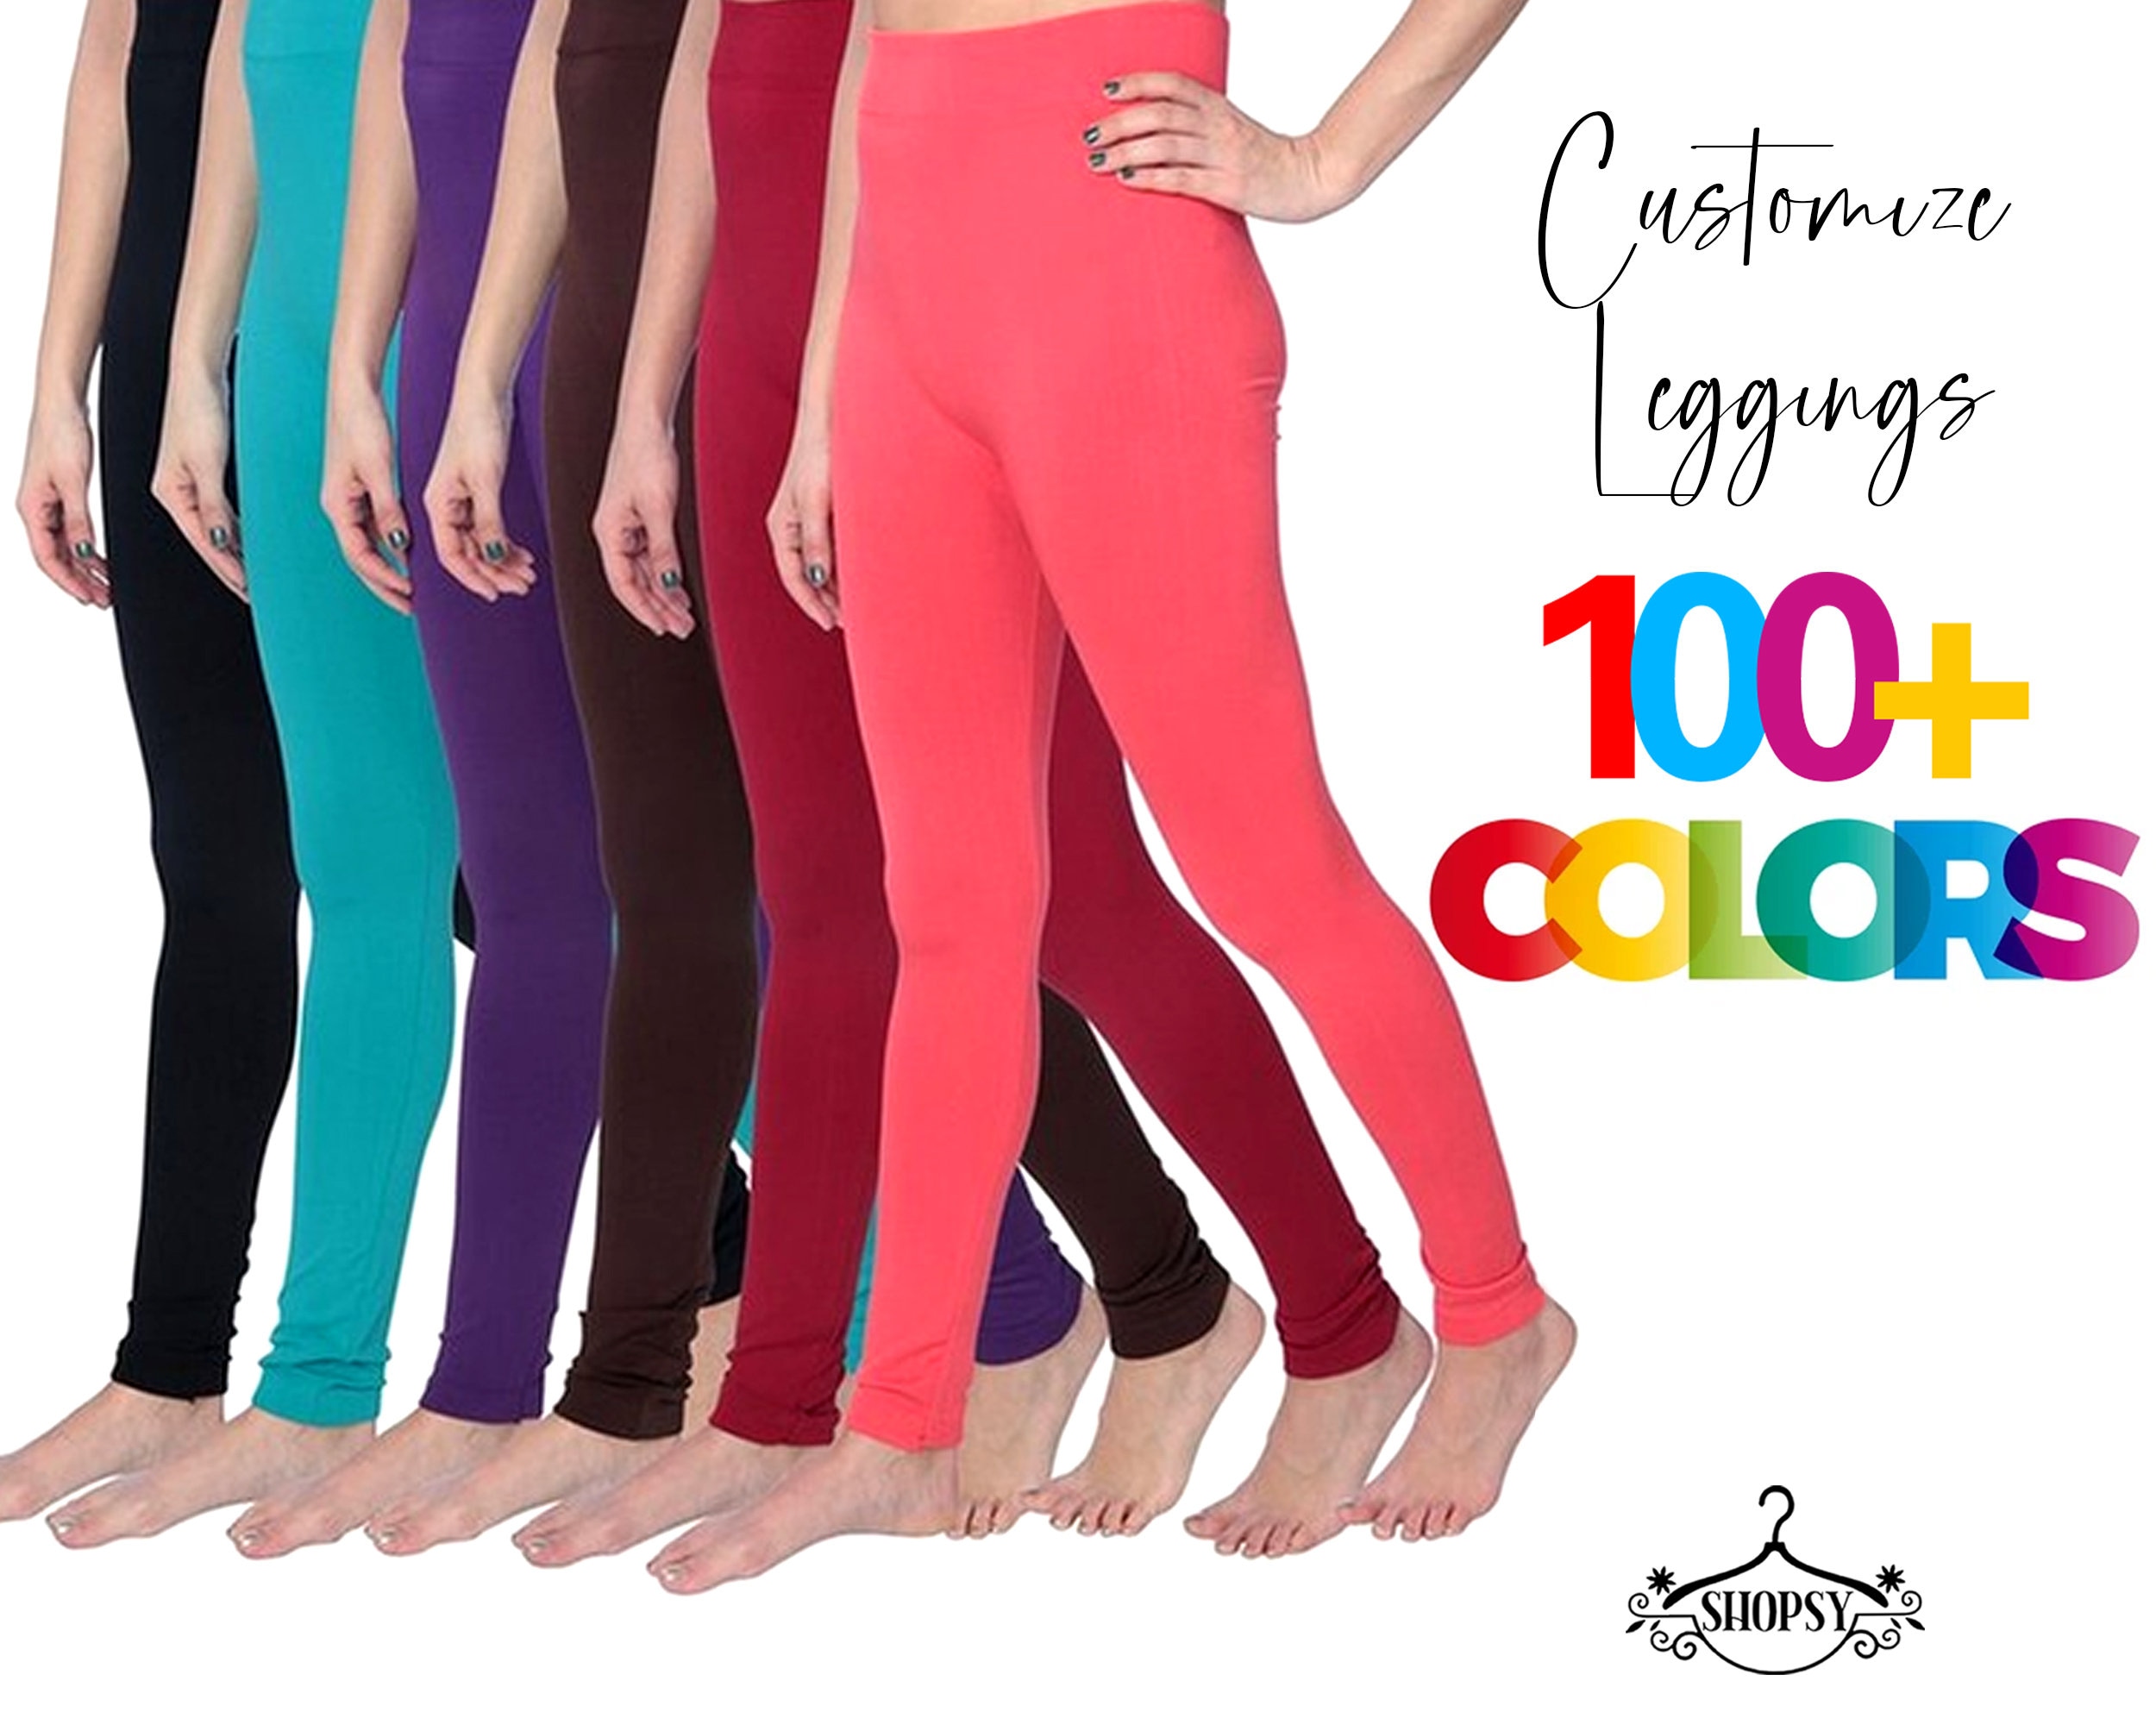 Custom Leggings 100 Colors Full Length Opaque Leggings, Maxi Tights, Yoga  Pants, All Purpose Leggings, Made in USA, Regular and Plus Sizes 